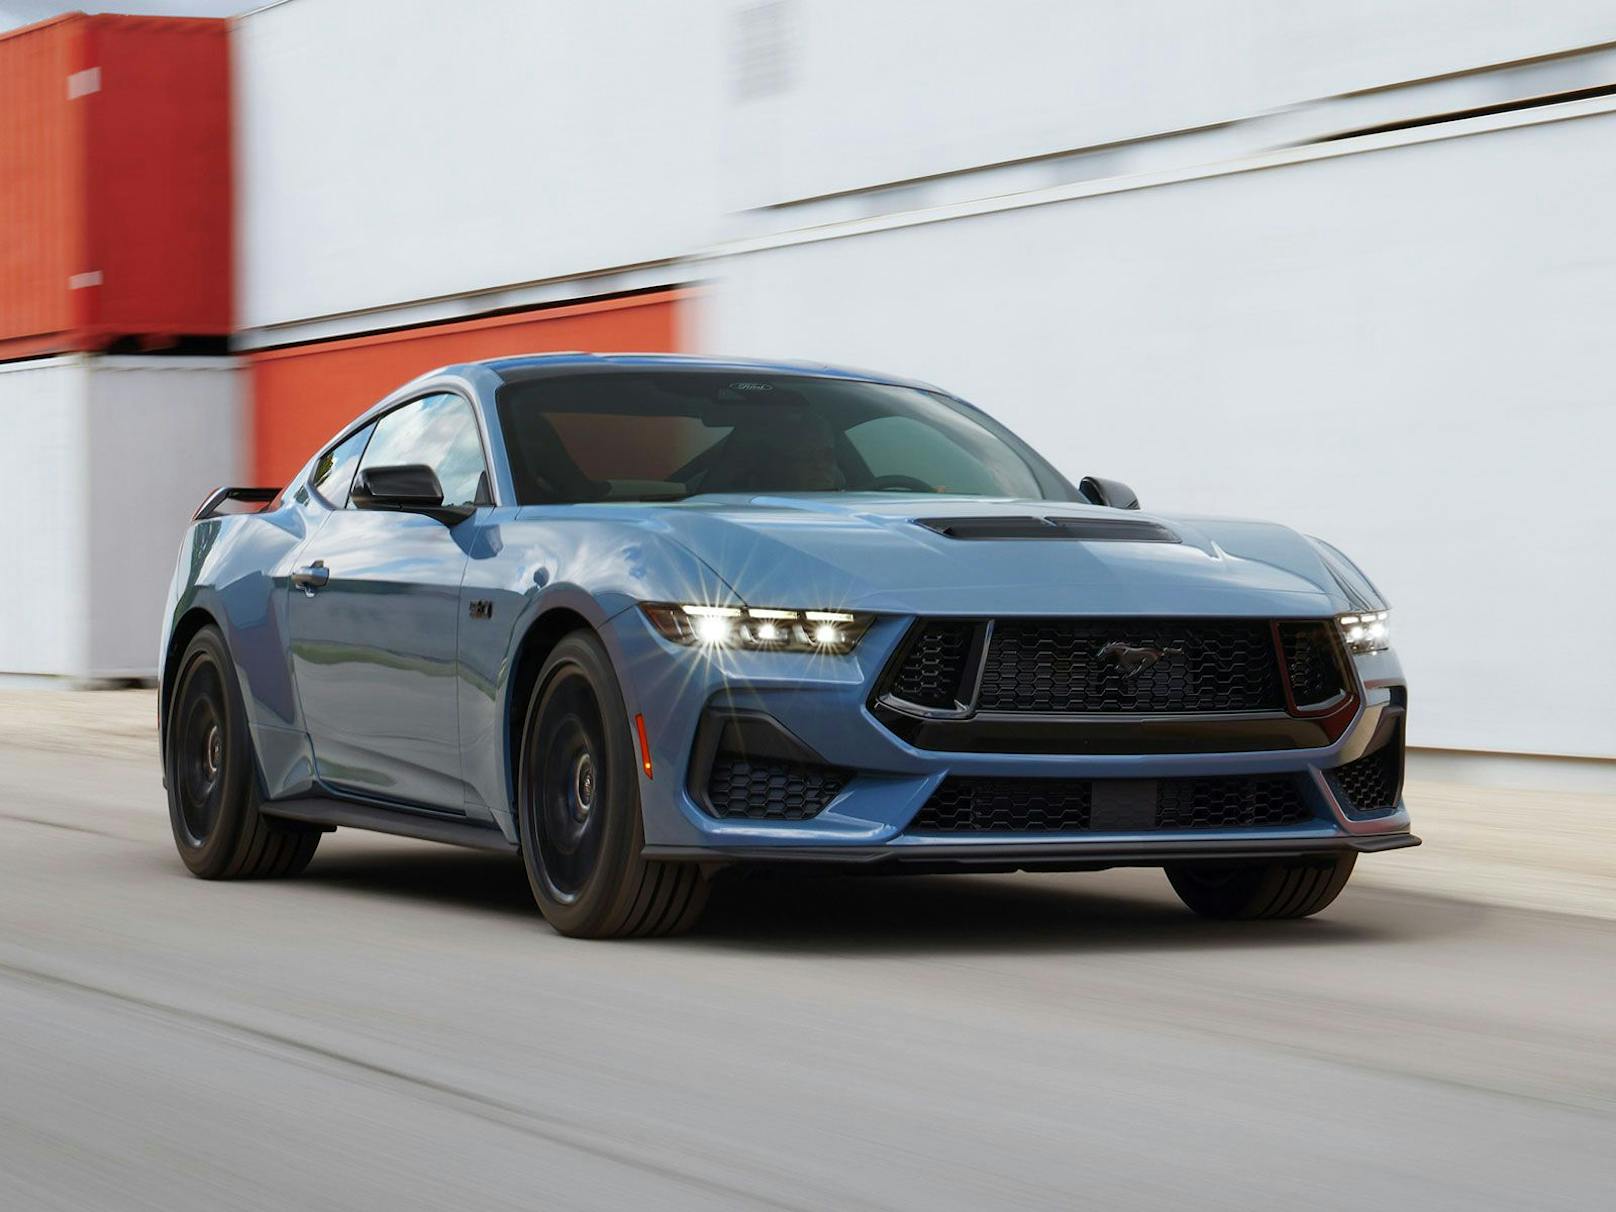 Der neue Ford Mustang wirkt durch die neuen LED-Scheinwerfer noch bulliger.